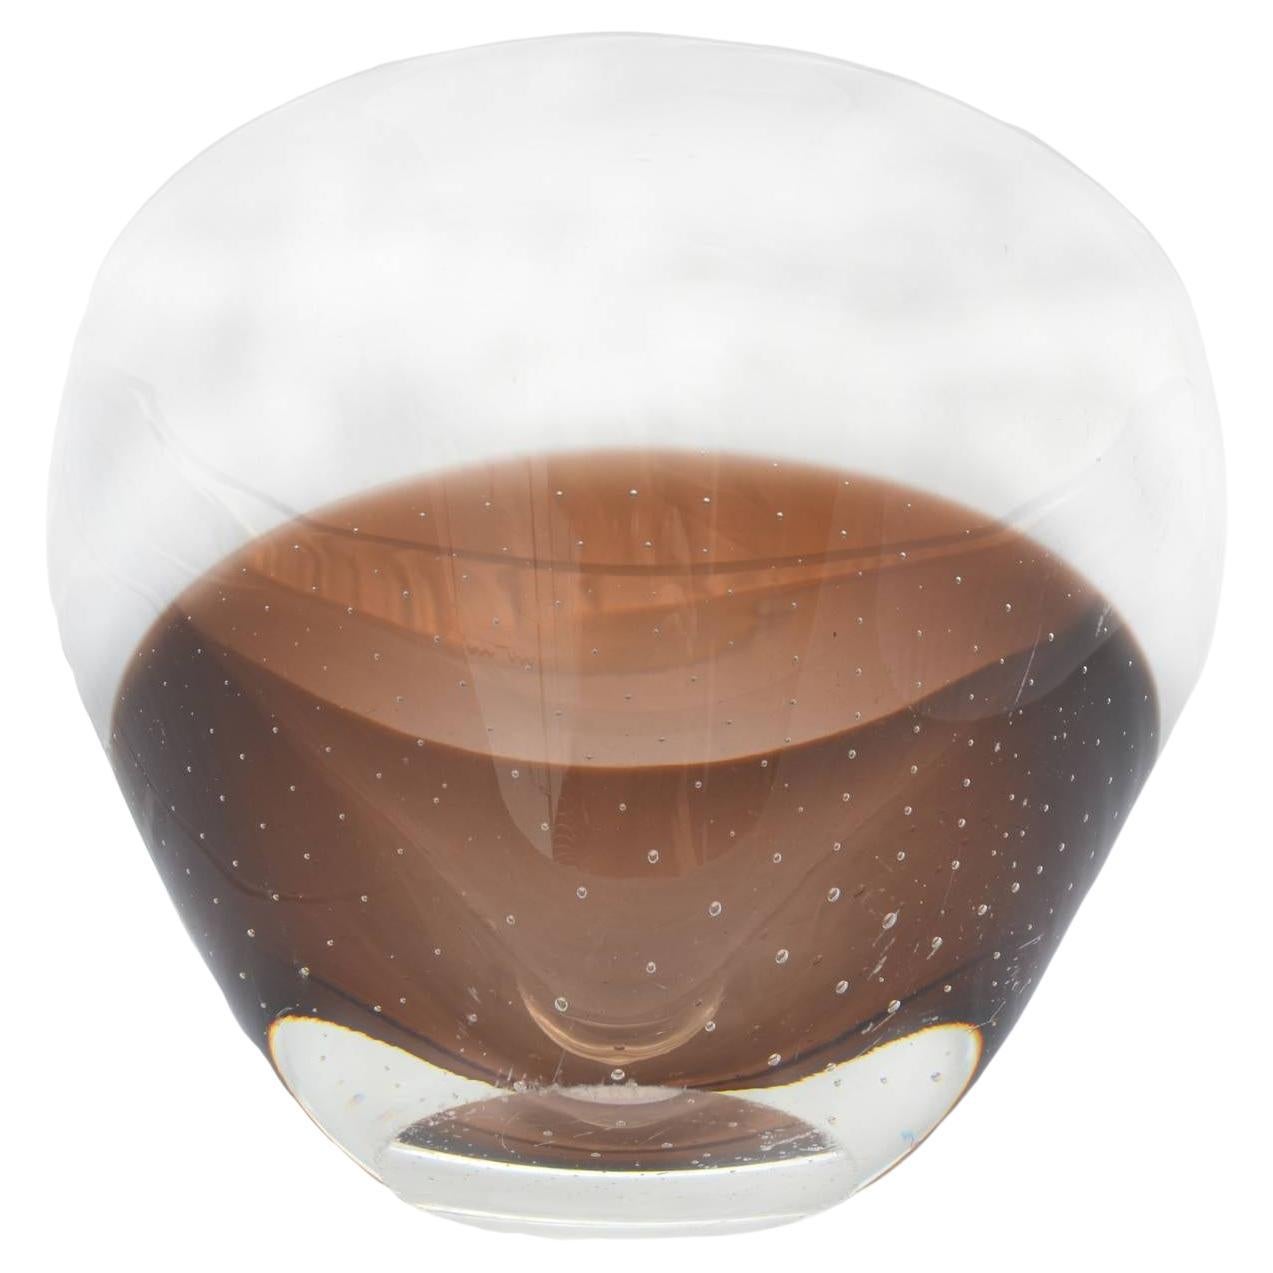 Superbe bol en verre transparent et ambré Kosta Boda, datant du milieu du siècle dernier, avec des bulles contrôlées dans la moitié inférieure de la couleur ambrée, c.1960. L'esthétique neutre ambrée et transparente a un côté scandinave très